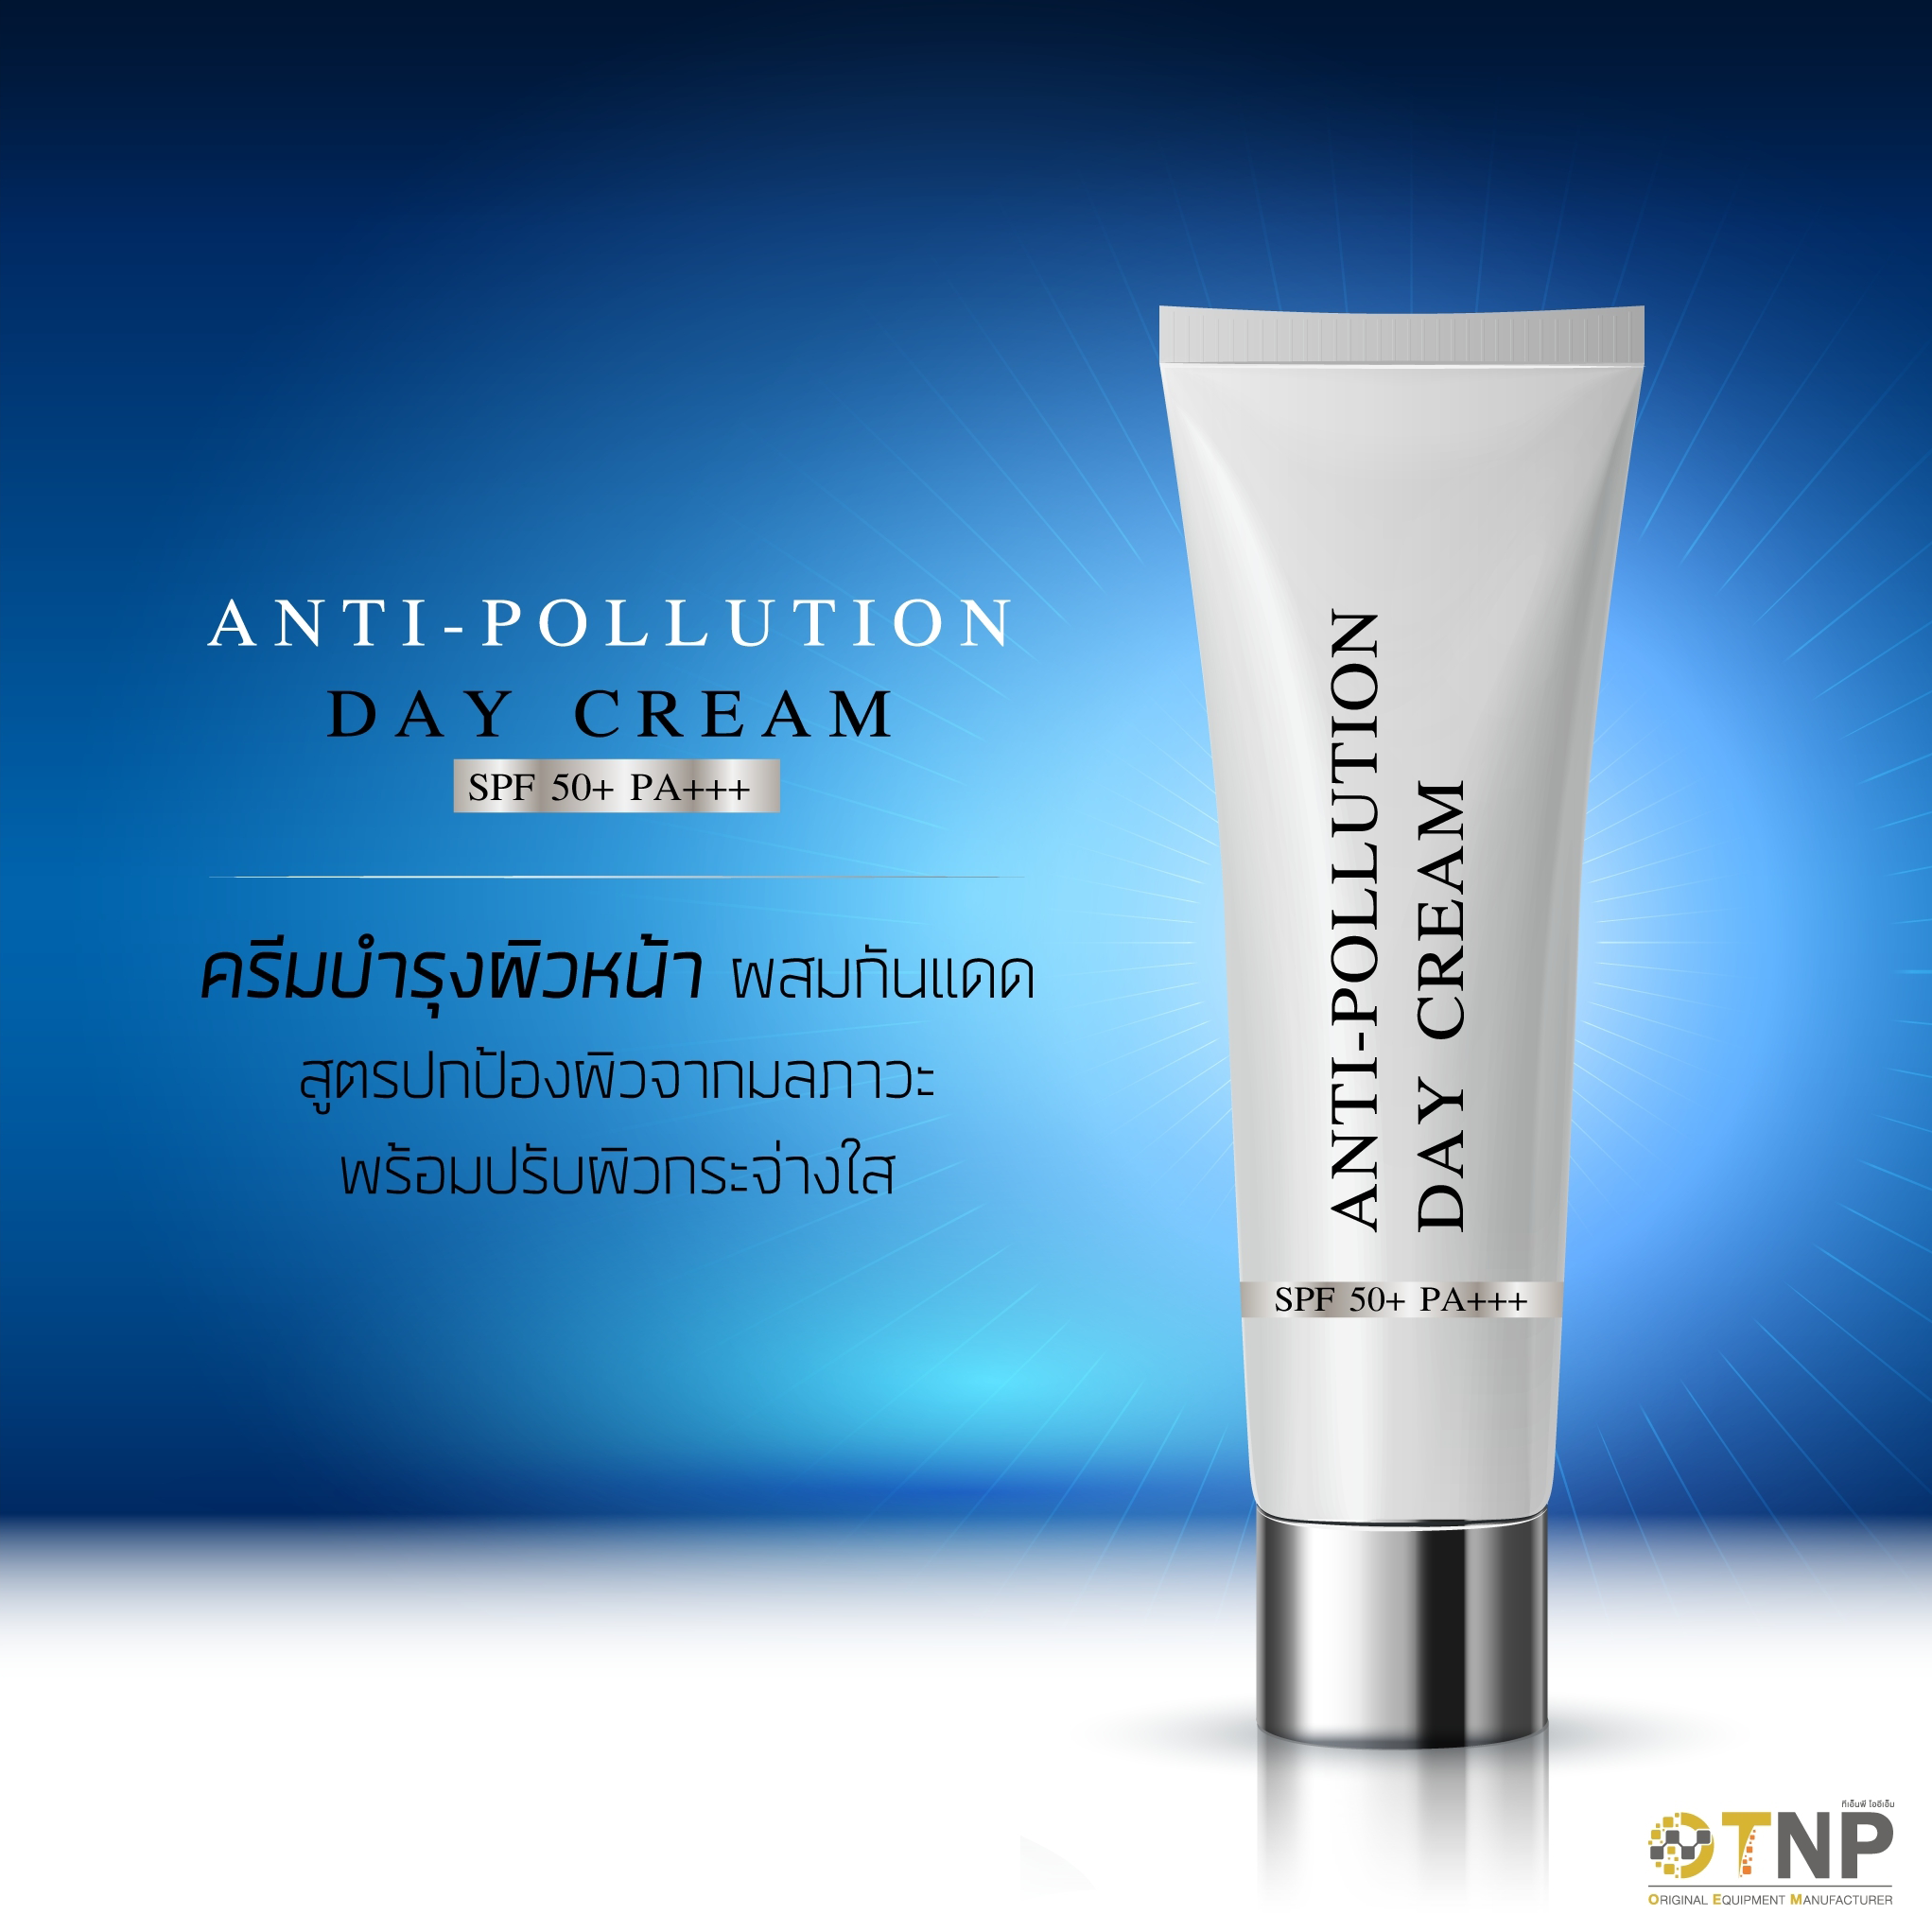 Anti-Pollution Day Cream SPF50+ PA+++